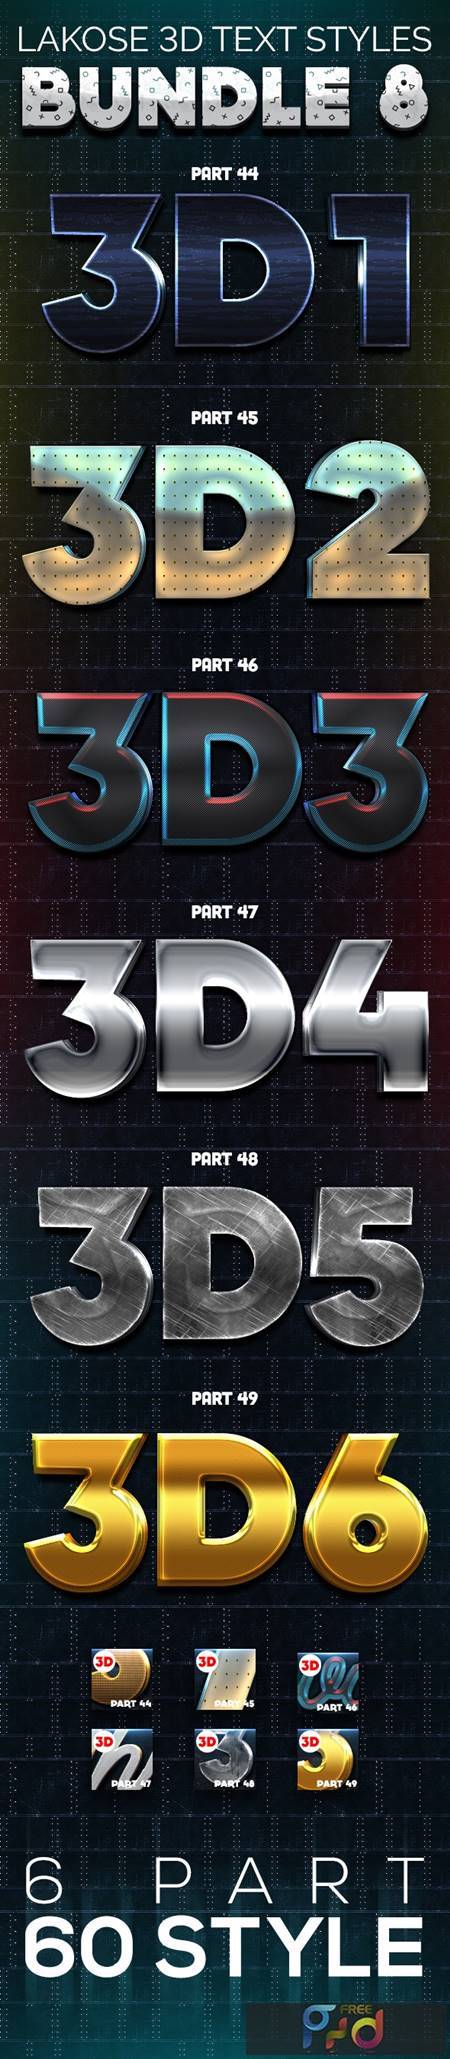 Lakose 3D Text Styles Bundle 8 26527596 1